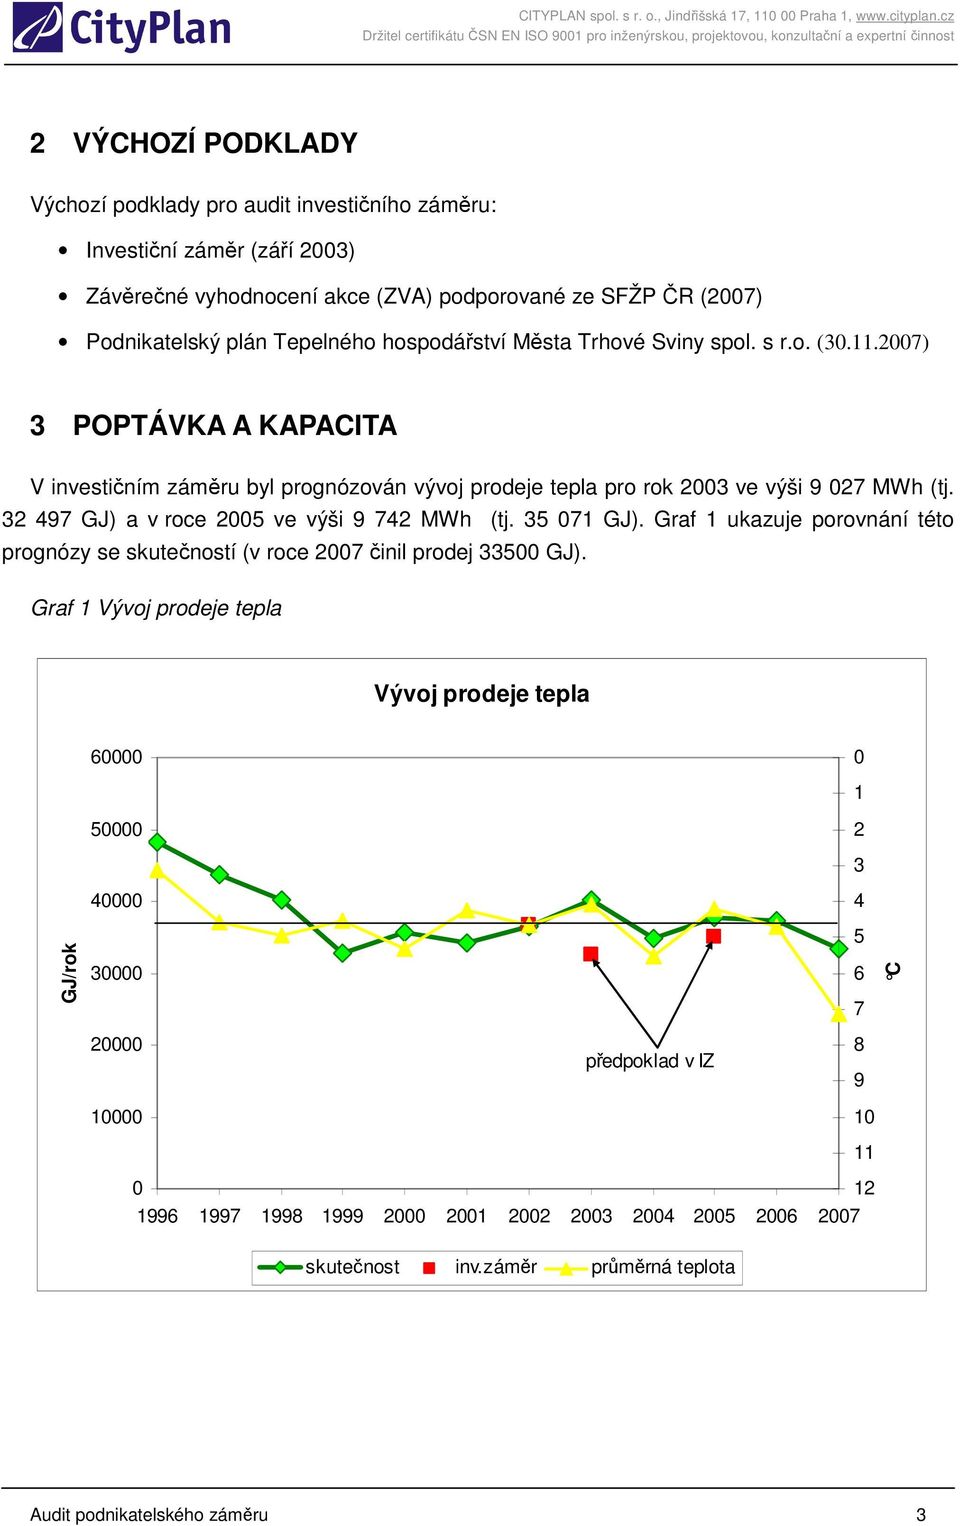 32 497 GJ) a v roce 2005 ve výši 9 742 MWh (tj. 35 071 GJ). Graf 1 ukazuje porovnání této prognózy se skutečností (v roce 2007 činil prodej 33500 GJ).